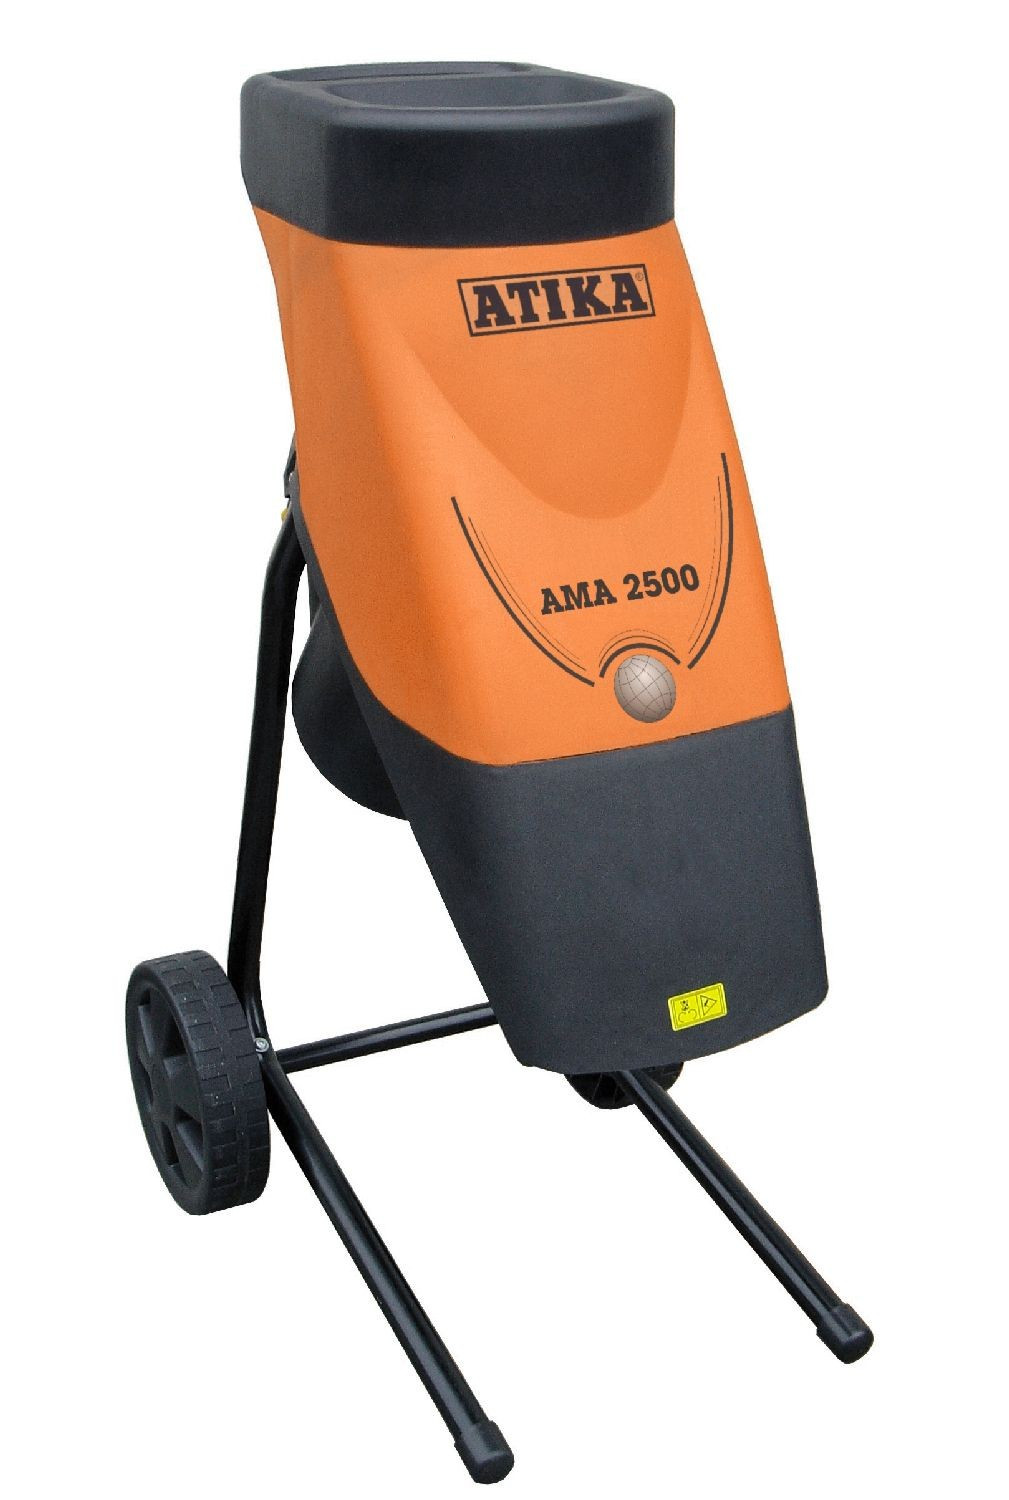 Messerhäcksler ATIKA AMA 2500 der kompakte Gartenhäcksler mit großer Leistung